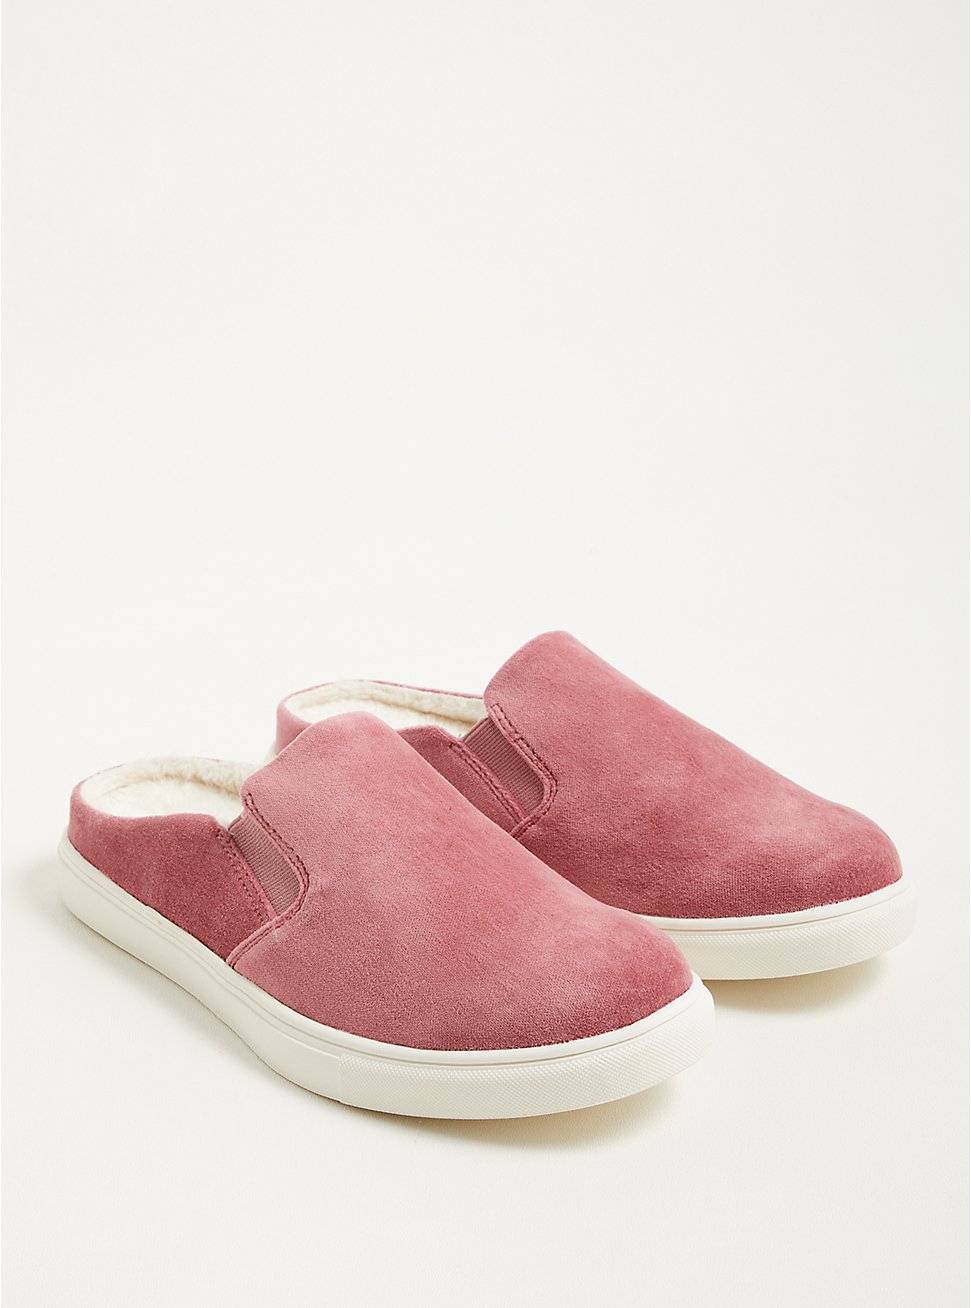 Plus Size Fur-Lined Slip On Sneaker - Pink Velvet (WW), LIGHT PINK, hi-res